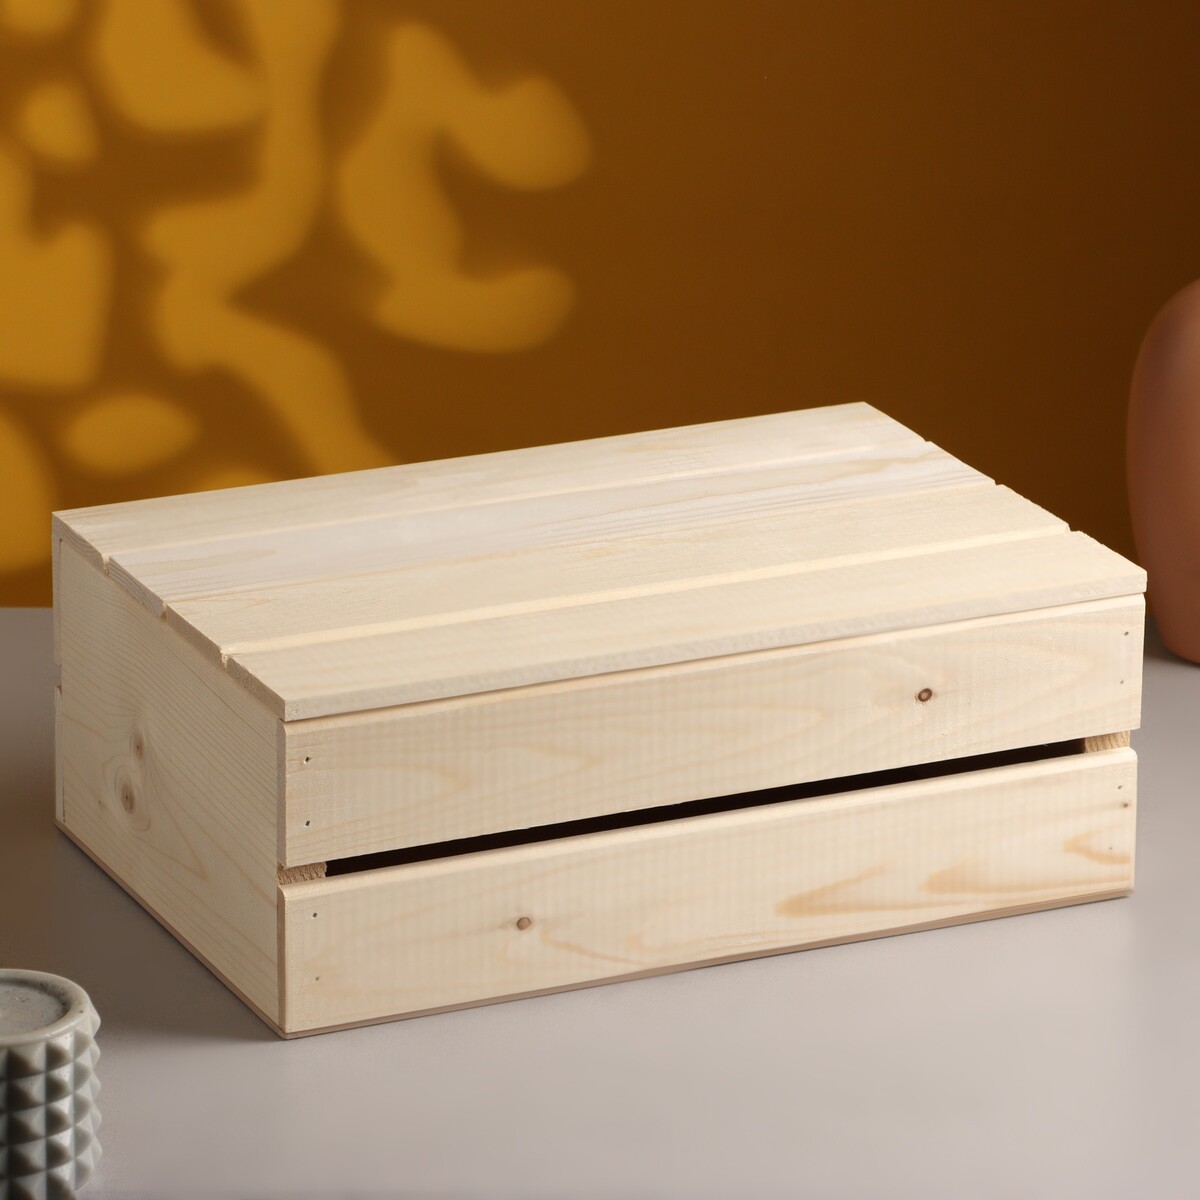 Ящик деревянный 35×23×13 см подарочный с реечной крышкой подарочный ящик 30×20×10 см деревянный с откидной крышкой с замком ручка дарим красиво